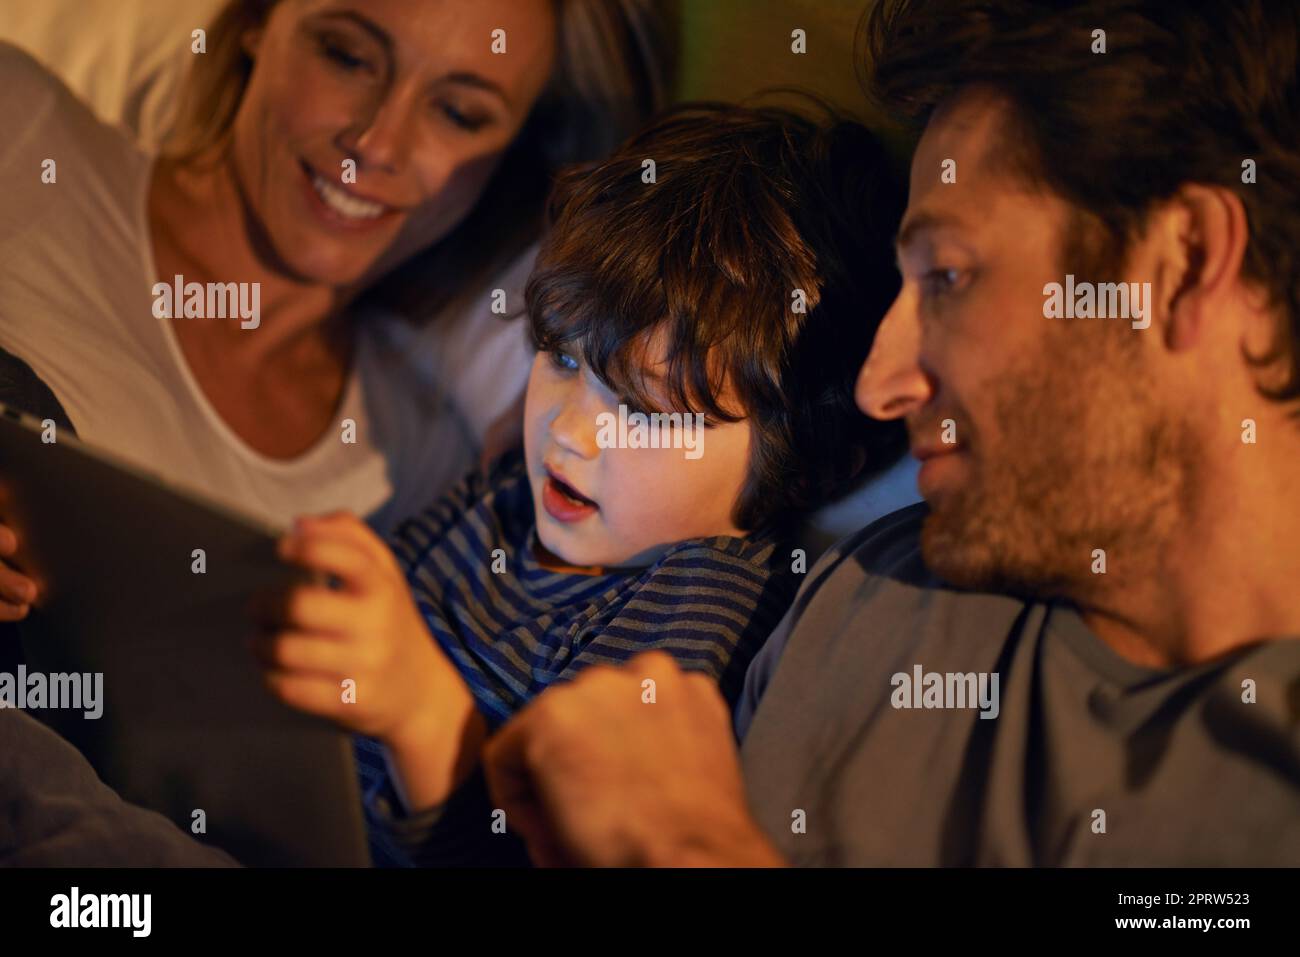 Familienfilmnacht im Bett. Eine junge Familie, die im Bett liegt und auf ein digitales Tablet schaut. Stockfoto